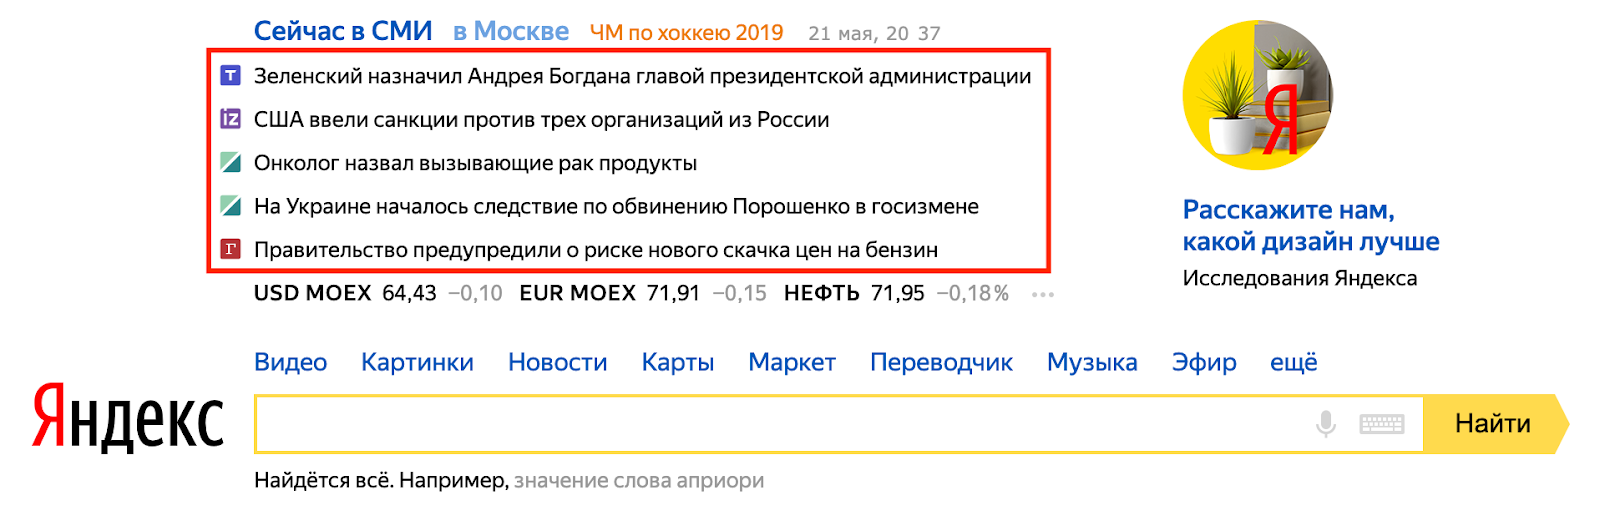 ТОП новостей в Яндексе